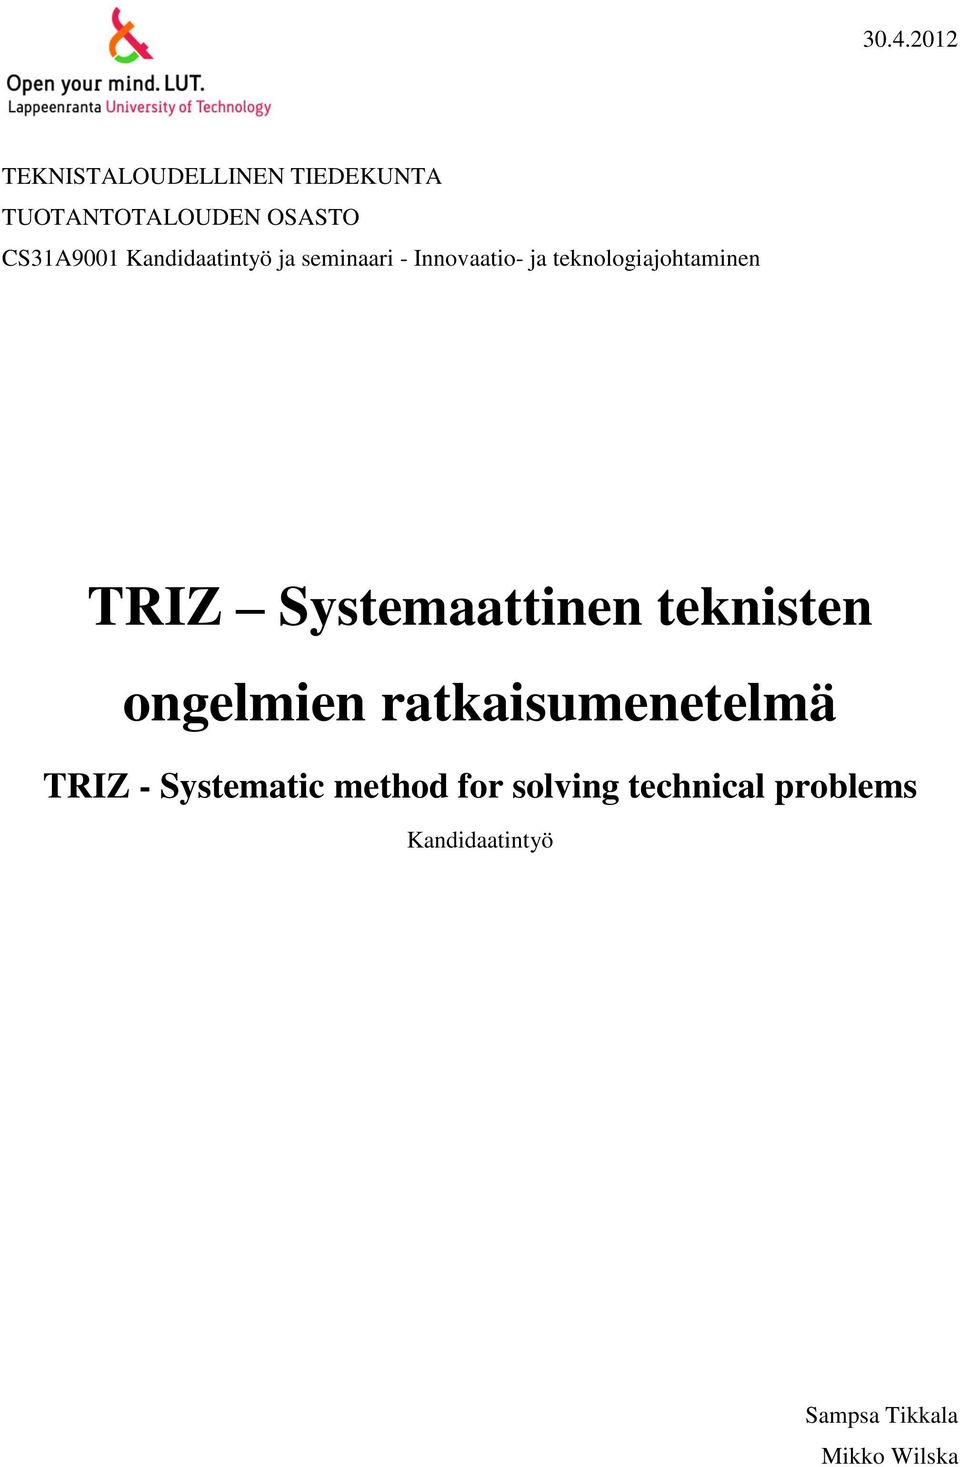 TRIZ Systemaattinen teknisten ongelmien ratkaisumenetelmä TRIZ